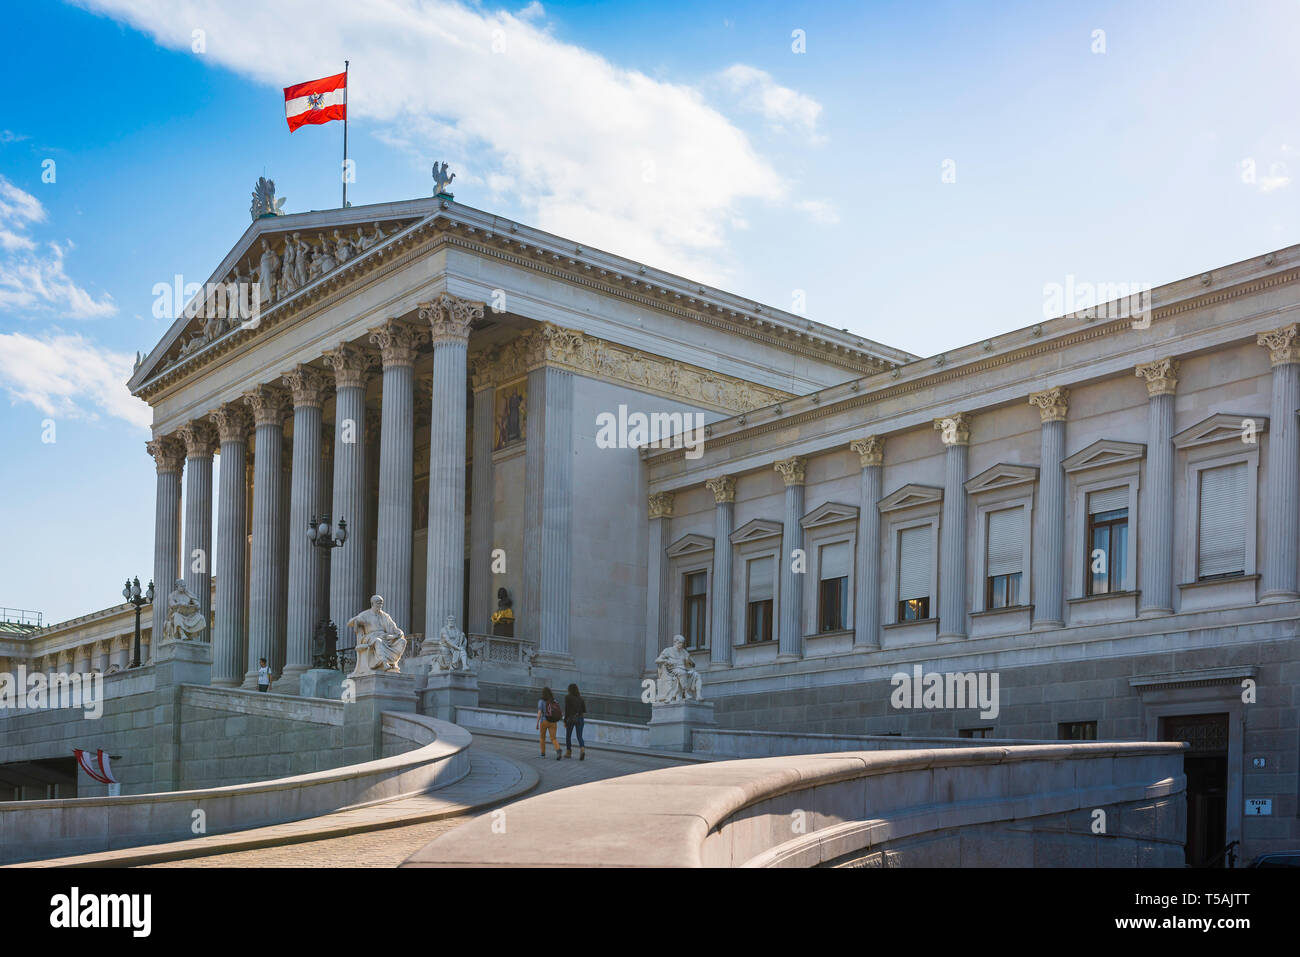 Wien Parlament, mit Blick auf die Grand portico Eingang der Österreichischen Parlament Gebäude im Zentrum von Wien (Wien). Stockfoto